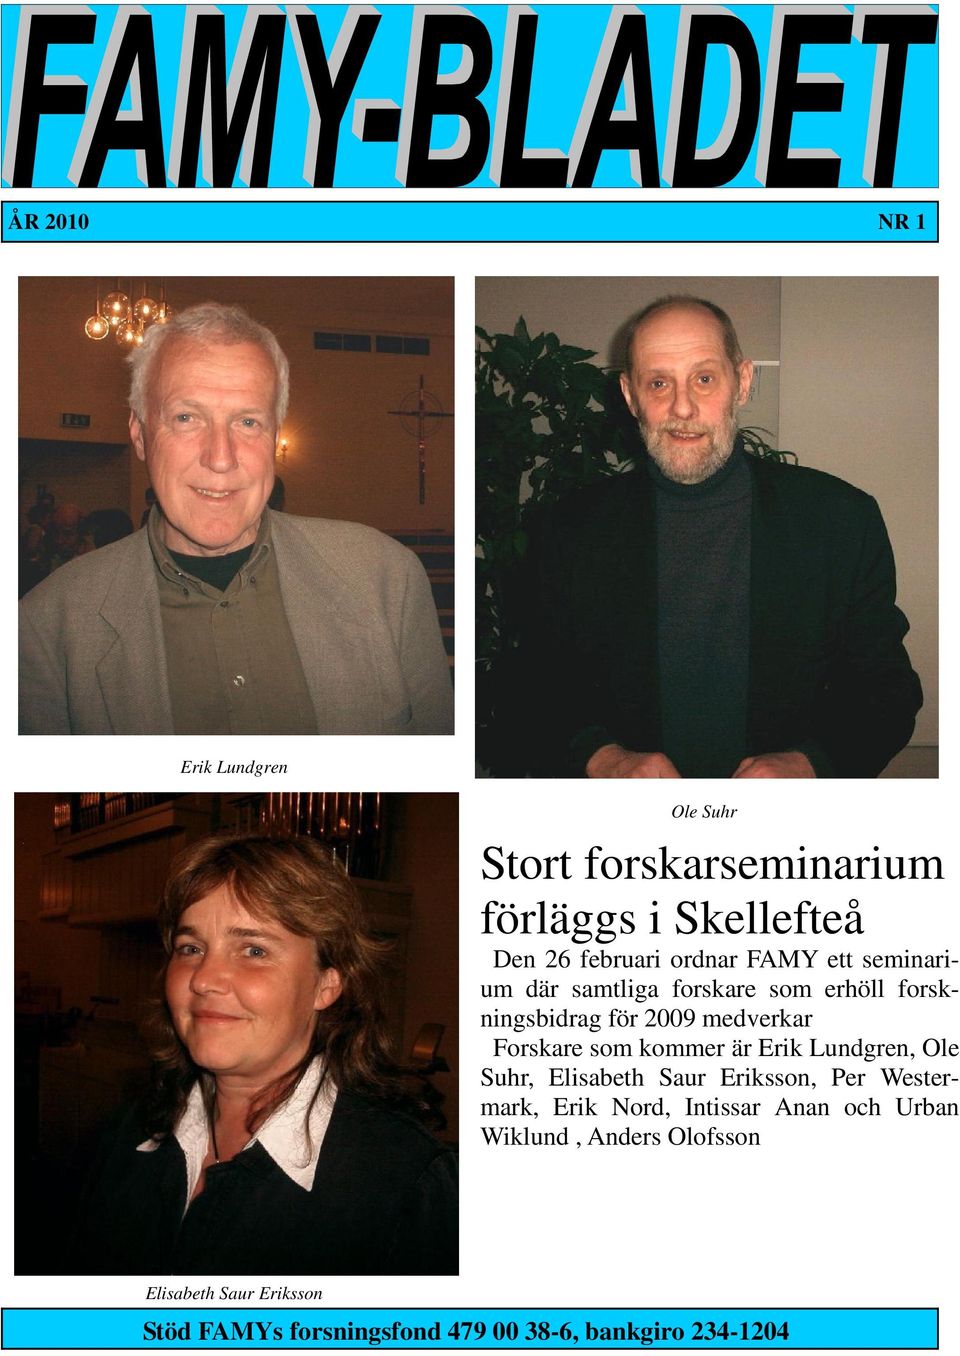 kommer är Erik Lundgren, Ole Suhr, Elisabeth Saur Eriksson, Per Westermark, Erik Nord, Intissar Anan och